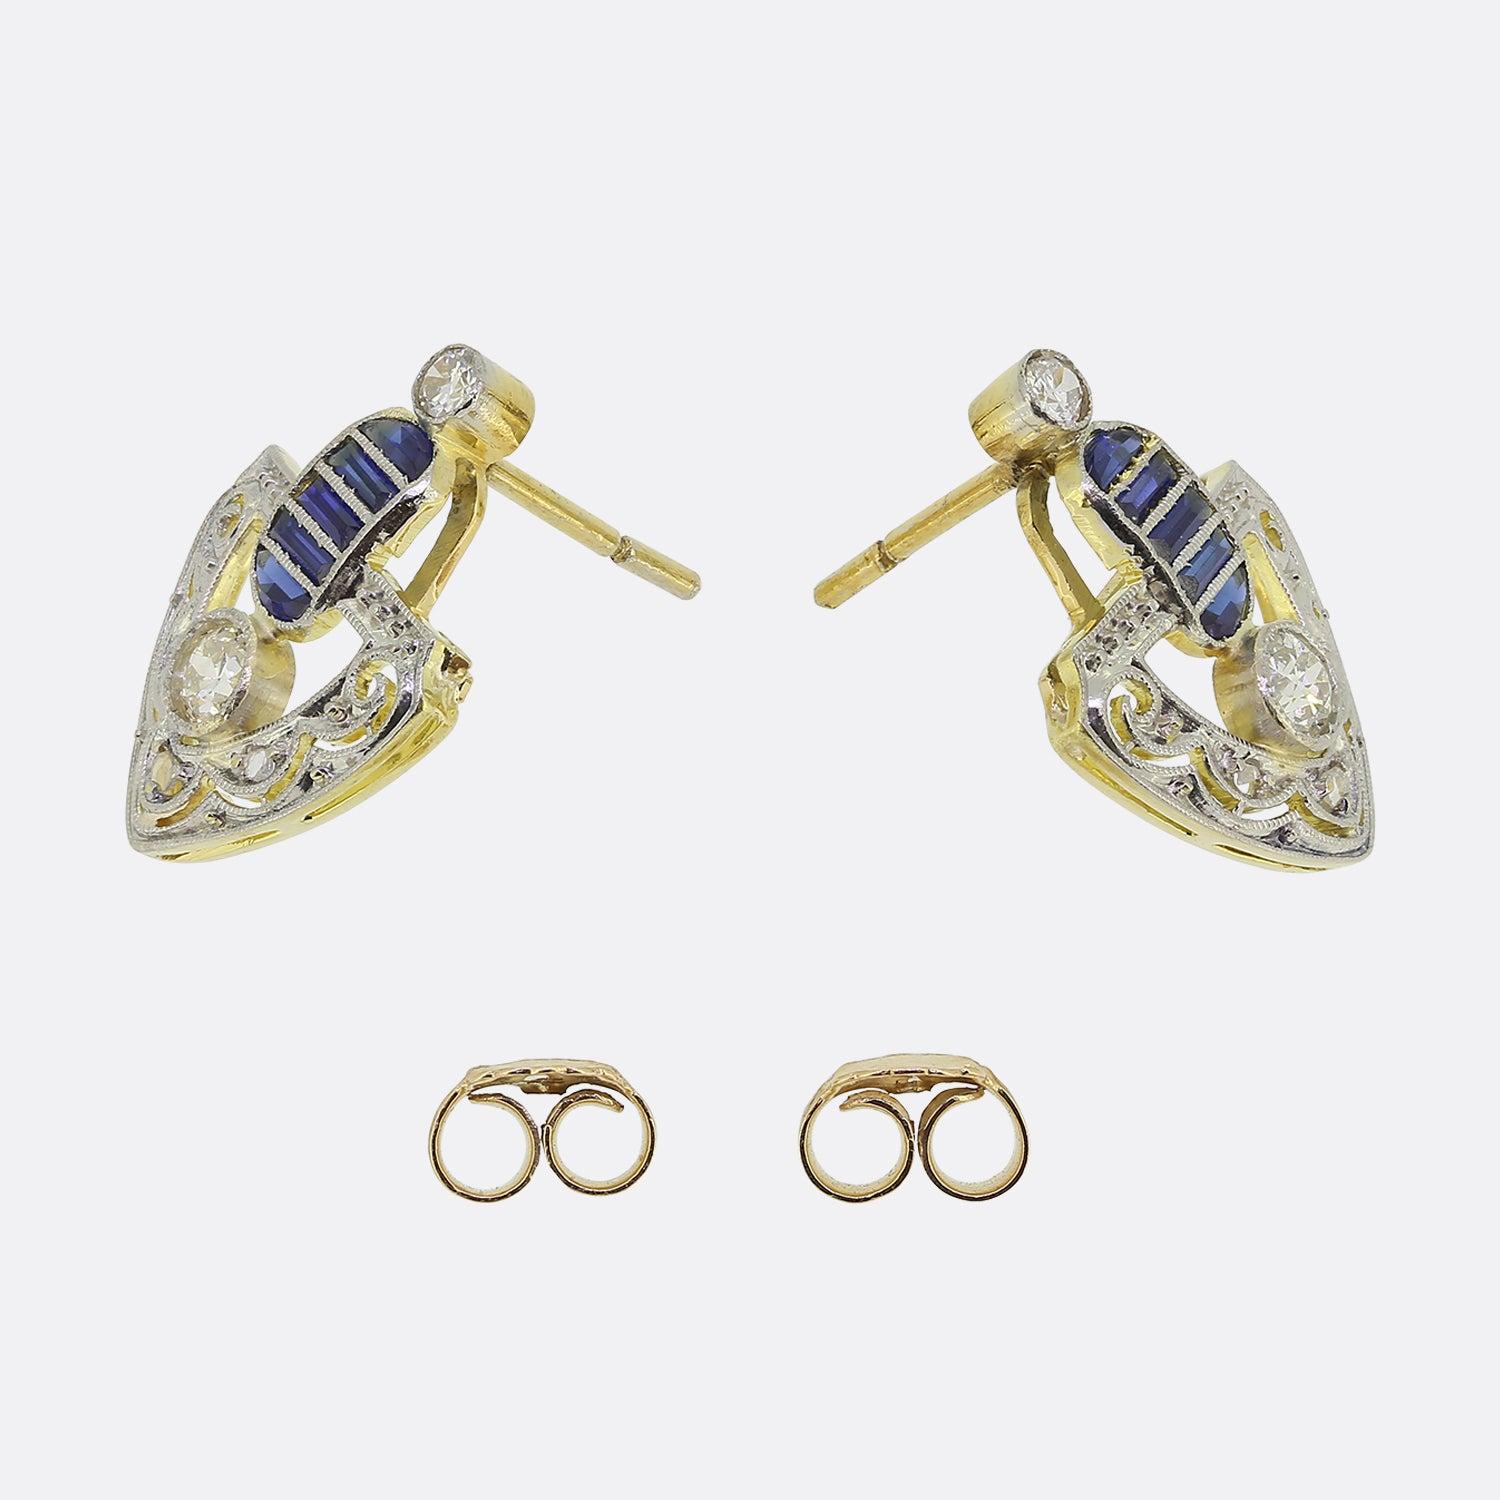 Hier haben wir ein wunderschön detailliertes Paar Saphir- und Diamant-Ohrringe aus der Edwardianischen Ära. Jedes Stück hat einen offenen Rahmen mit einem aufwändig gestalteten Perlenmuster. Dieses verschnörkelte Design ergänzt den runden Diamanten